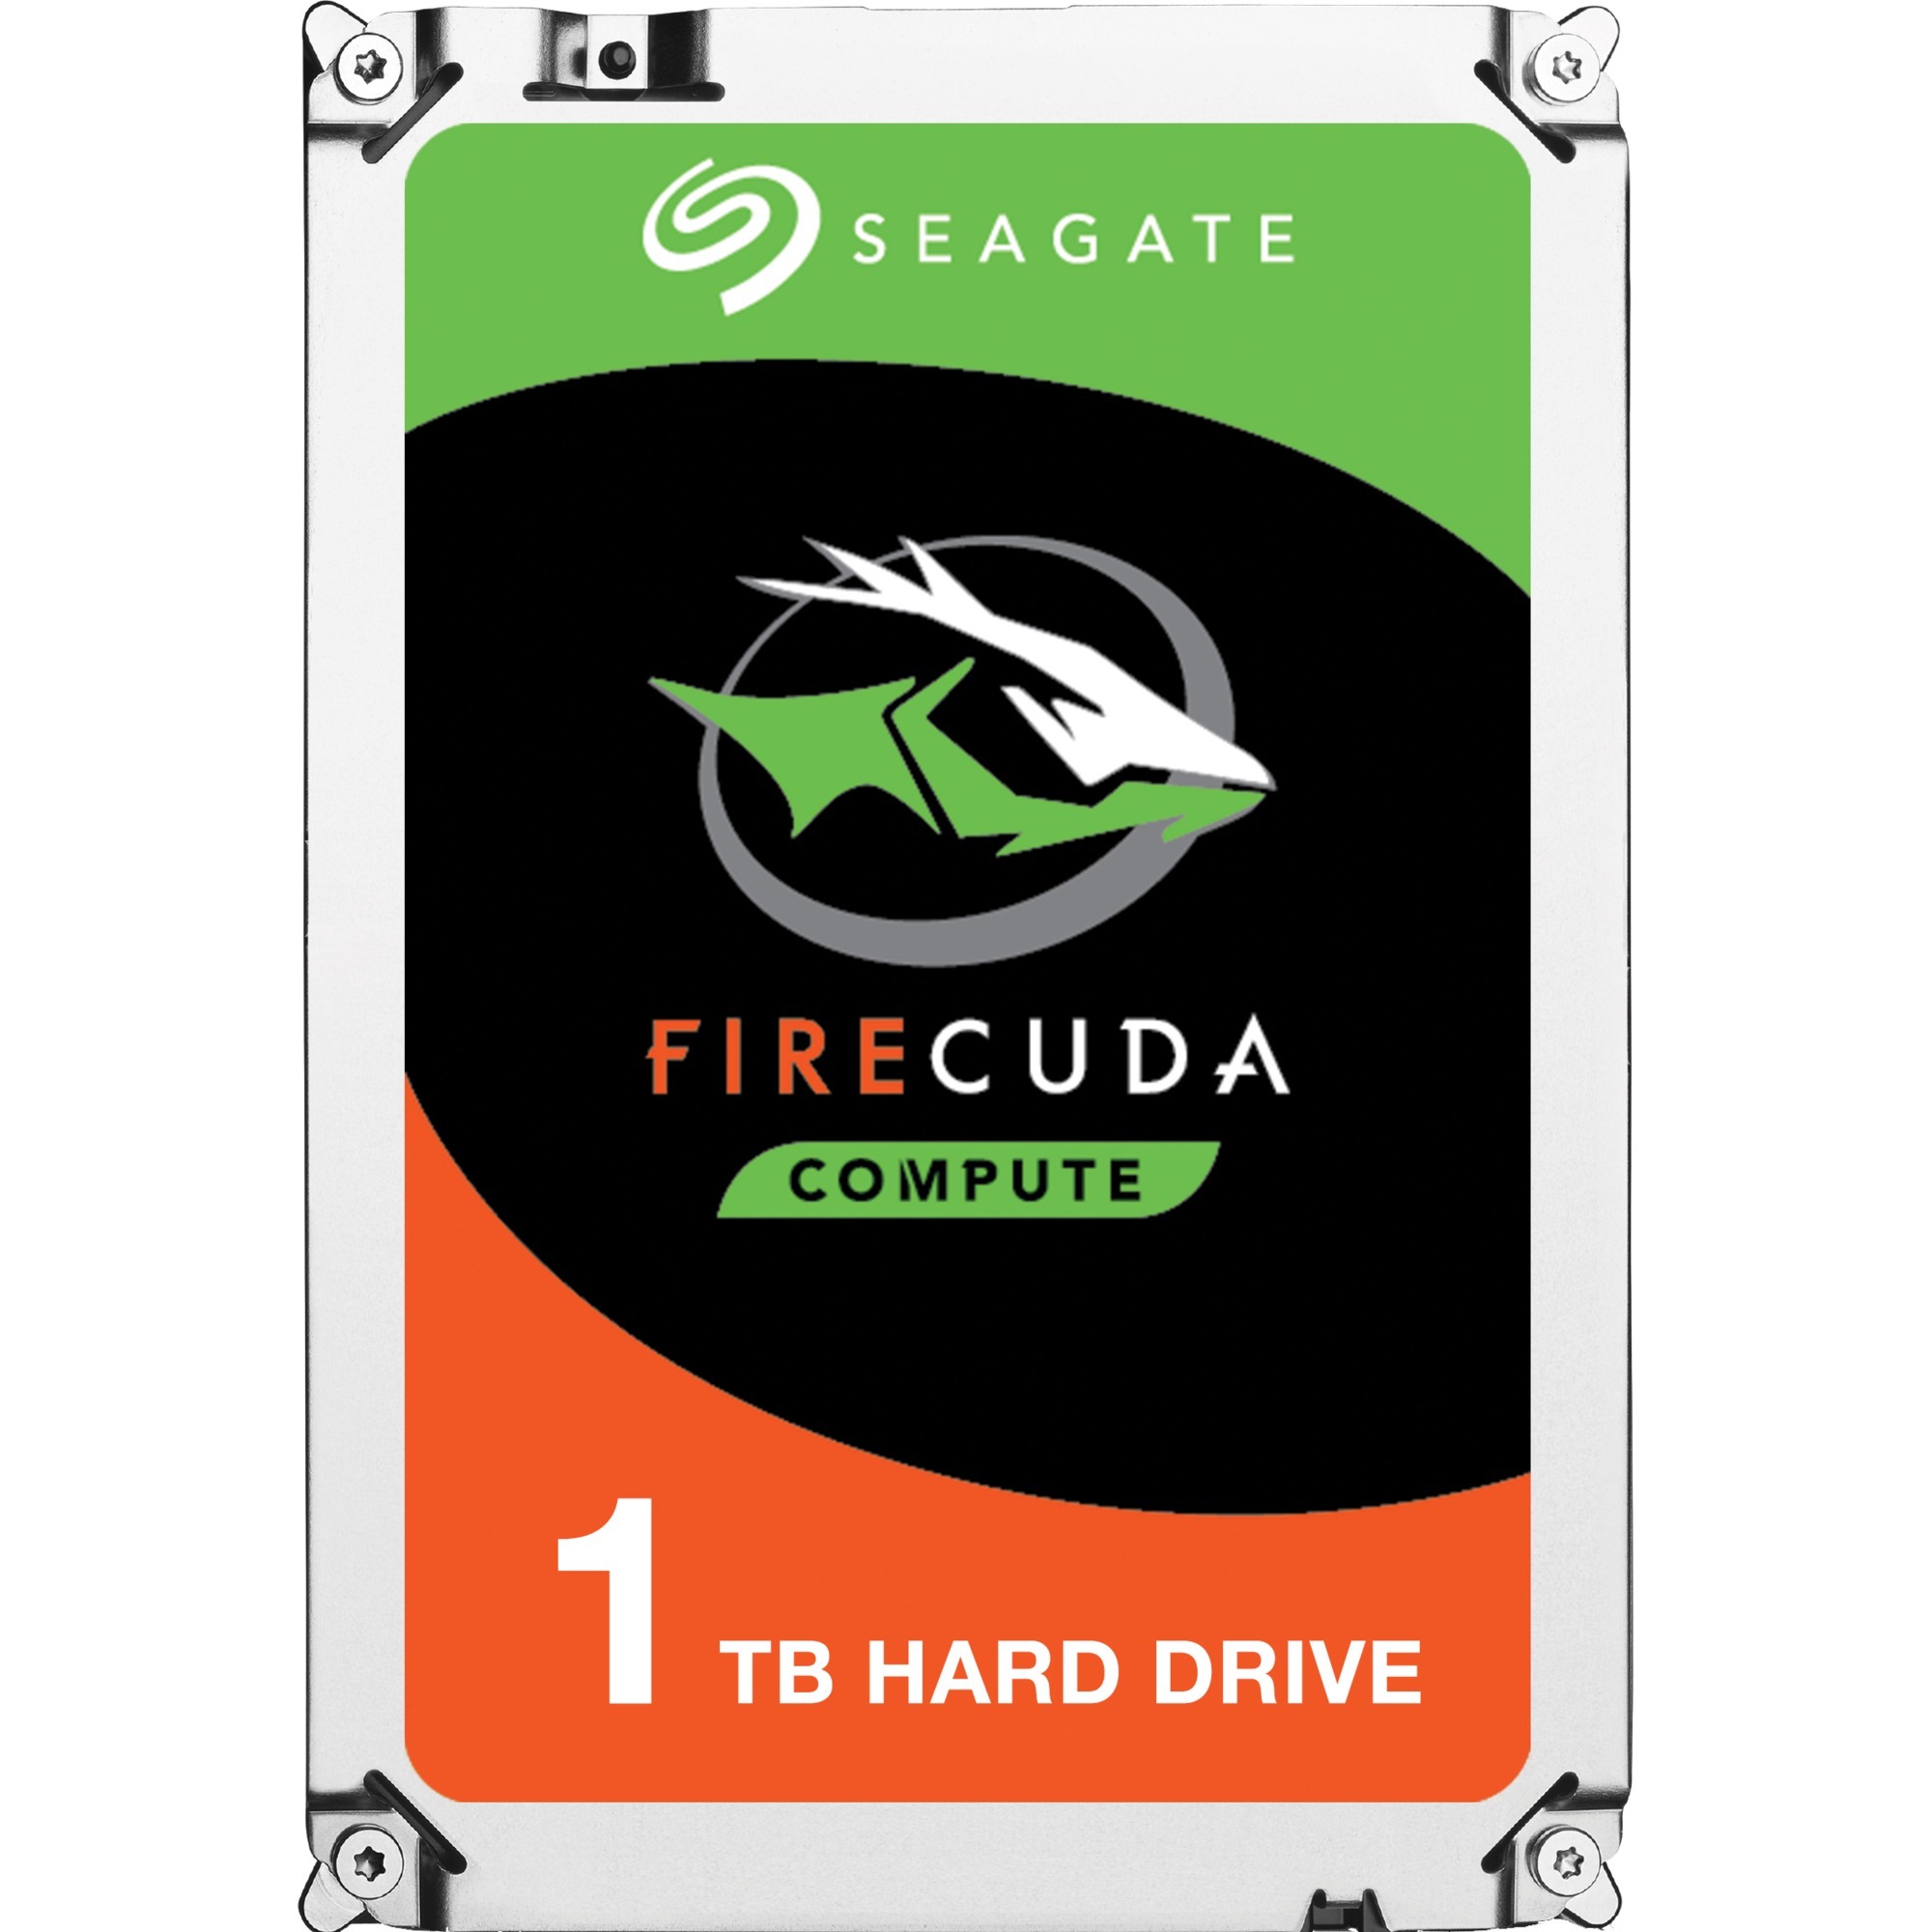 FireCuda 2.5" dysk twardy Hybrid HDD 1000 GB Serial ATA III, Hybrydowy dysk twardy